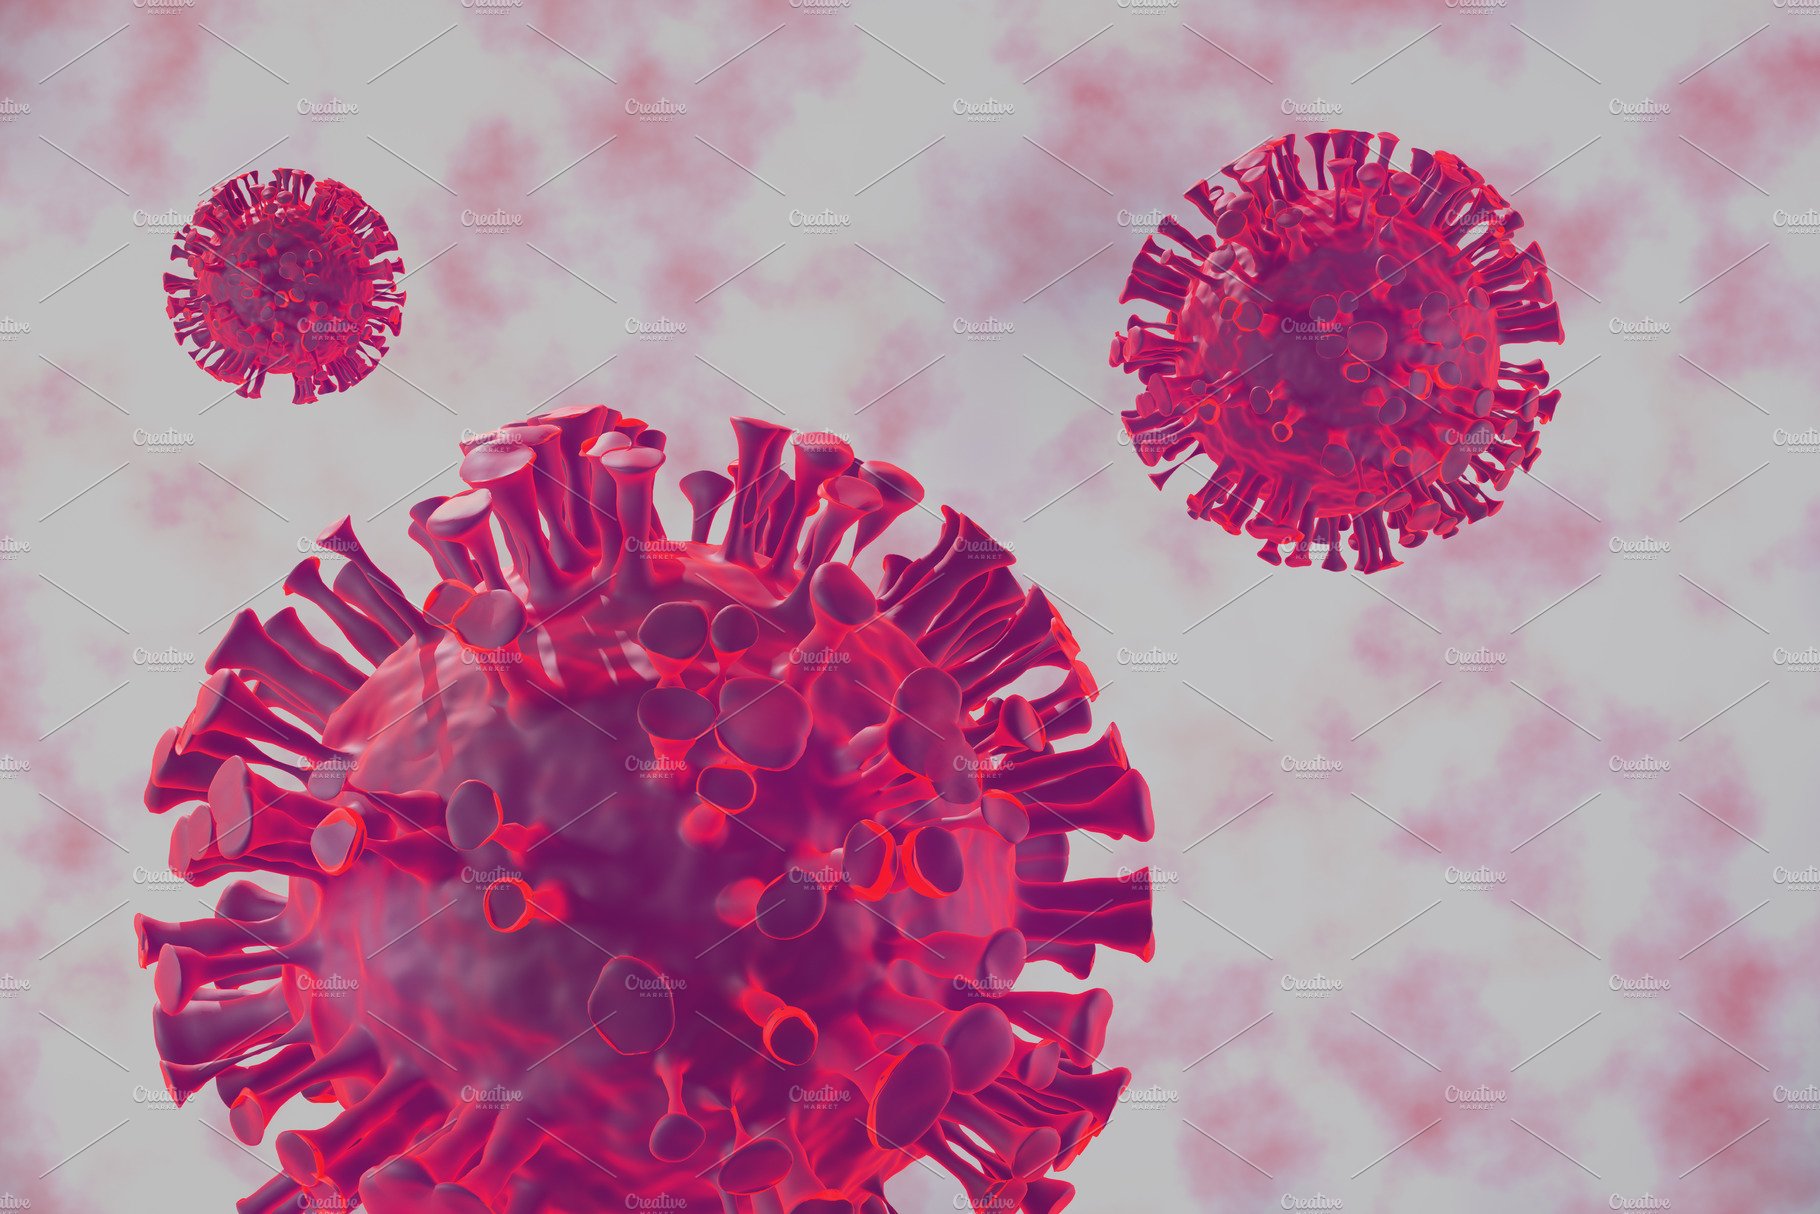 Covid-19, coronavirus virus body cover image.